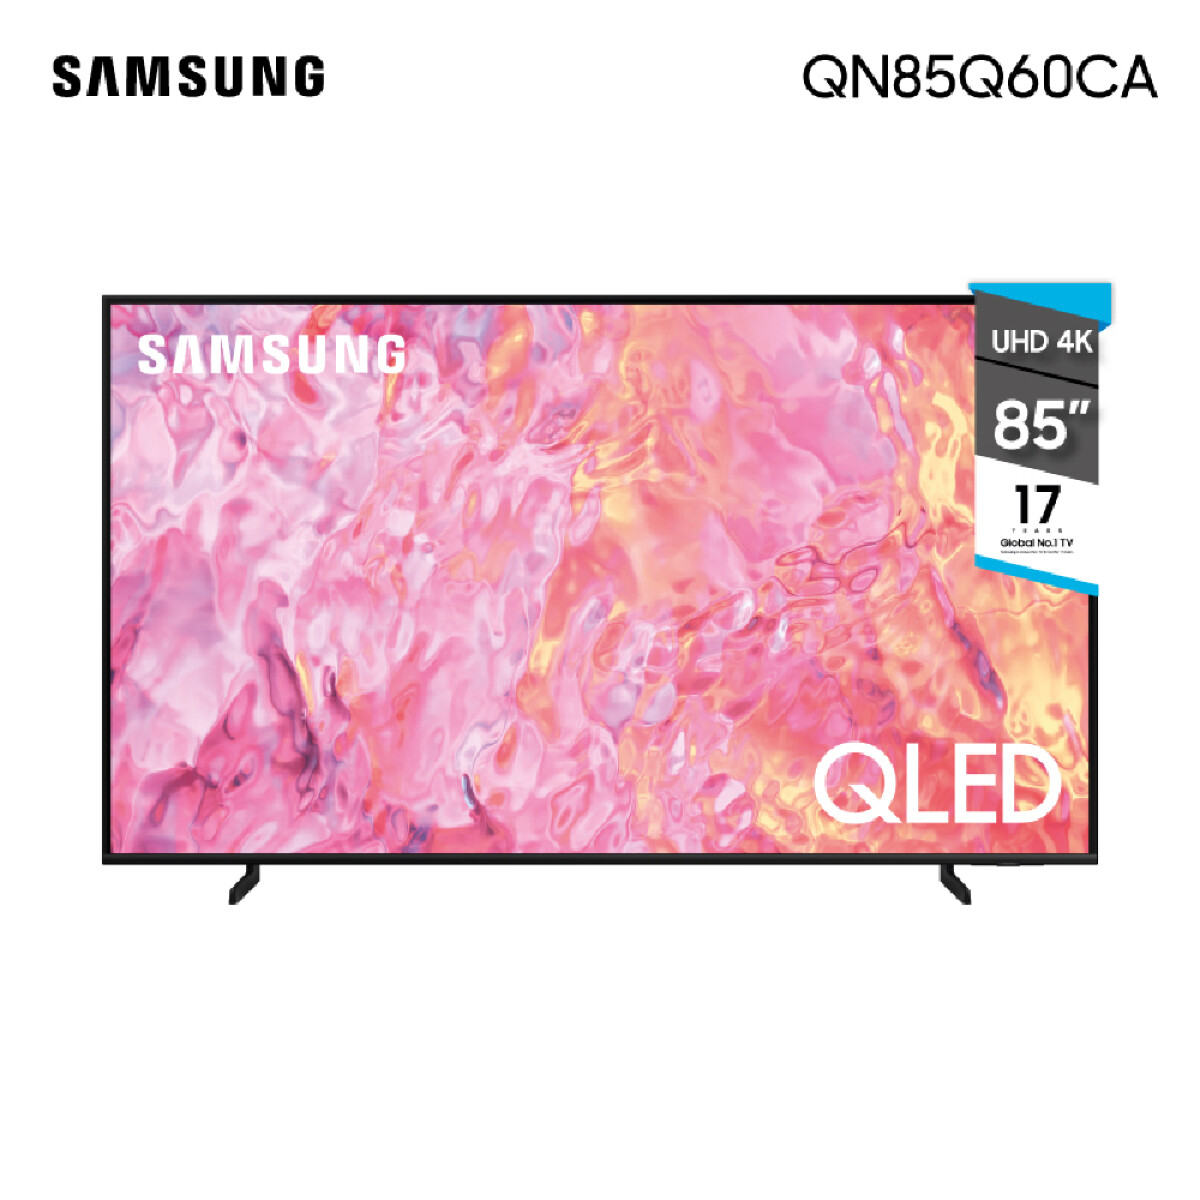 Smart TV Samsung QLED 85" QN85Q60CA 